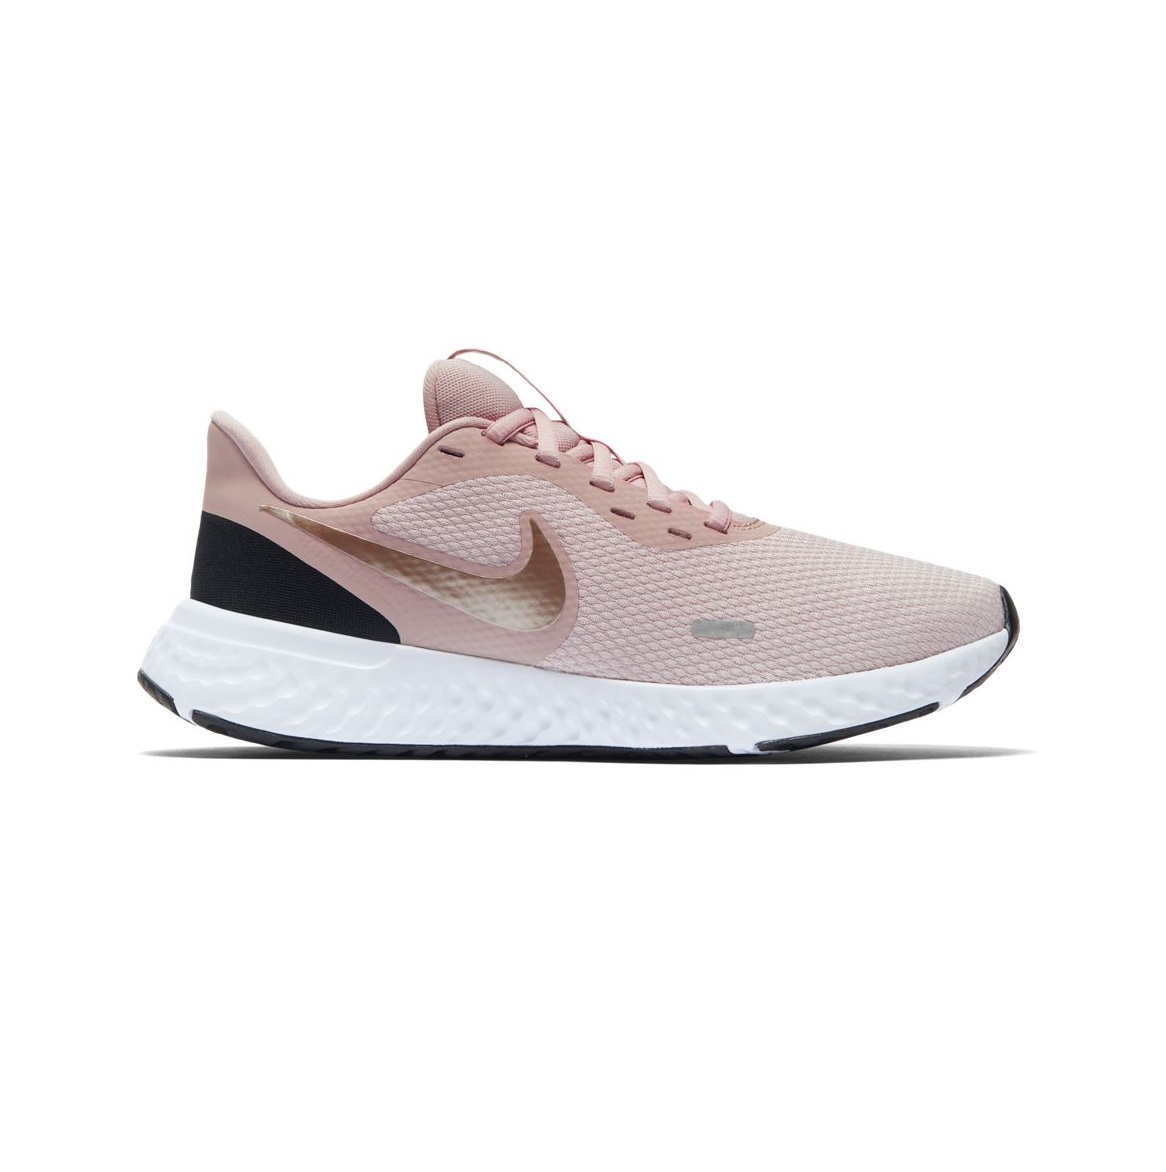 Zapatillas de running - Mujer - Nike Revolution 5 - BQ3207-600 ... عطور العنبر